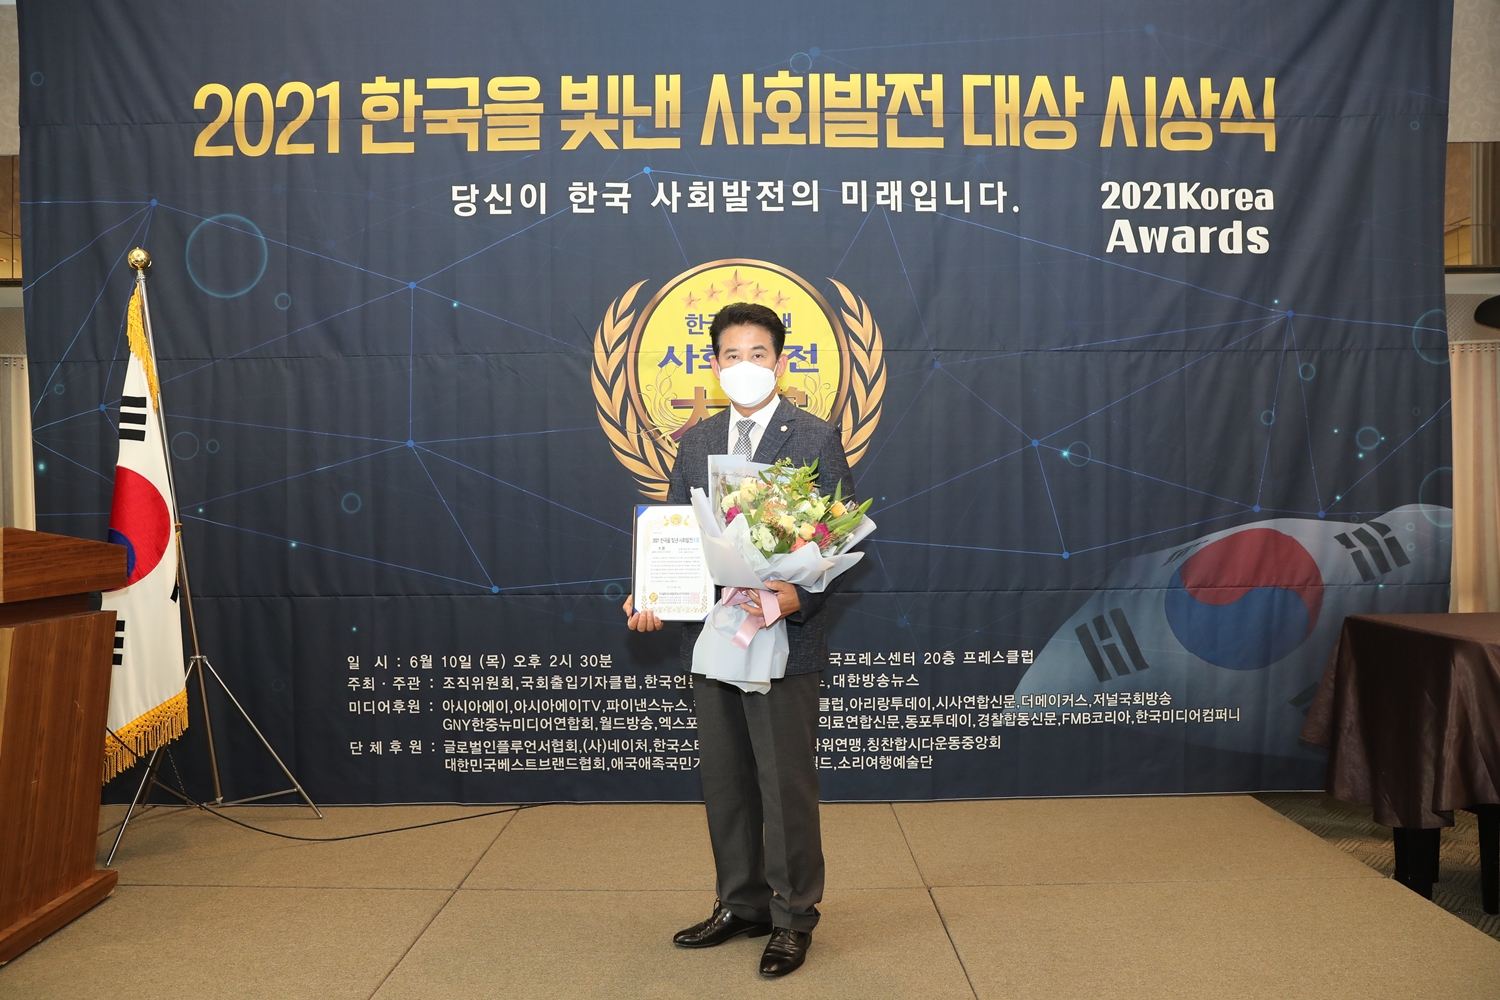 정재호 위원장, 2021 한국을 빛낸 사회발전 대상 수상(새창)